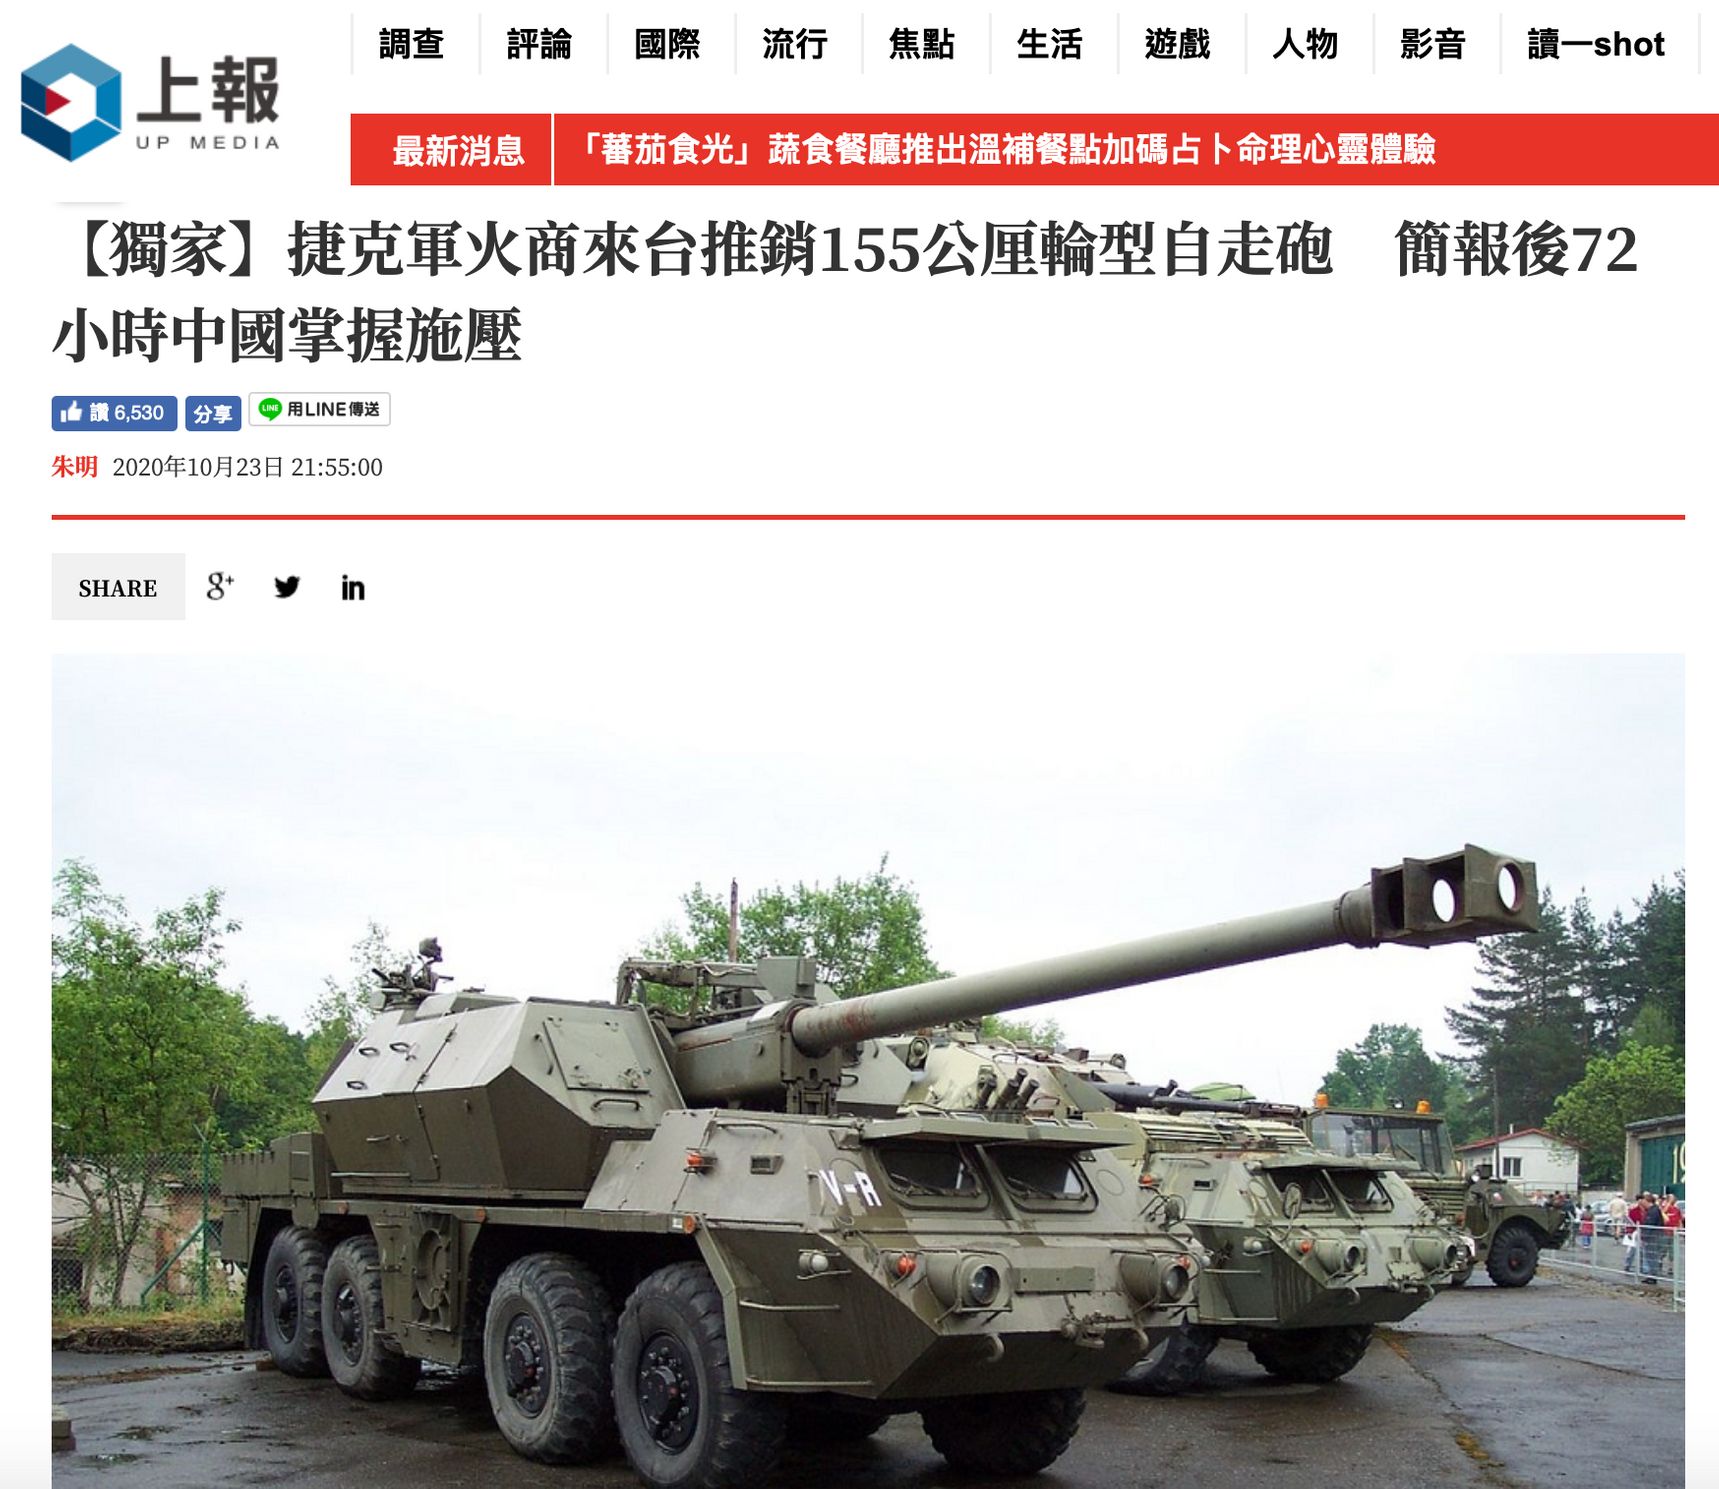 "Čeští obchodníci se zbraněmi přijíždějí na Tchaj-wan propagovat samohybná děla," uvádí titulek tchajwanského článku.